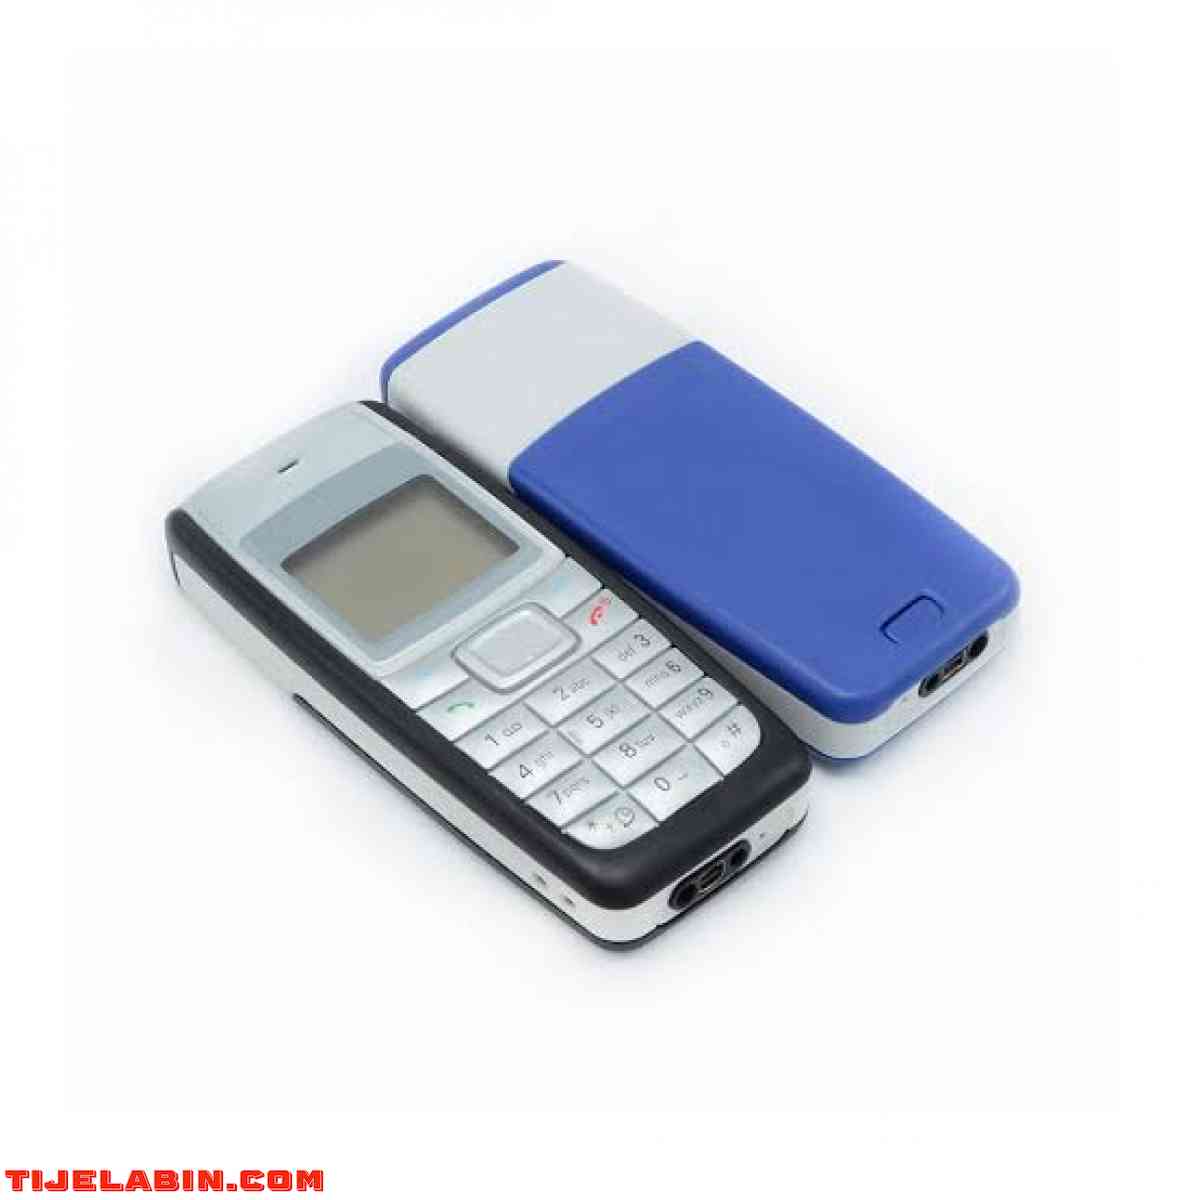 Nokia1110